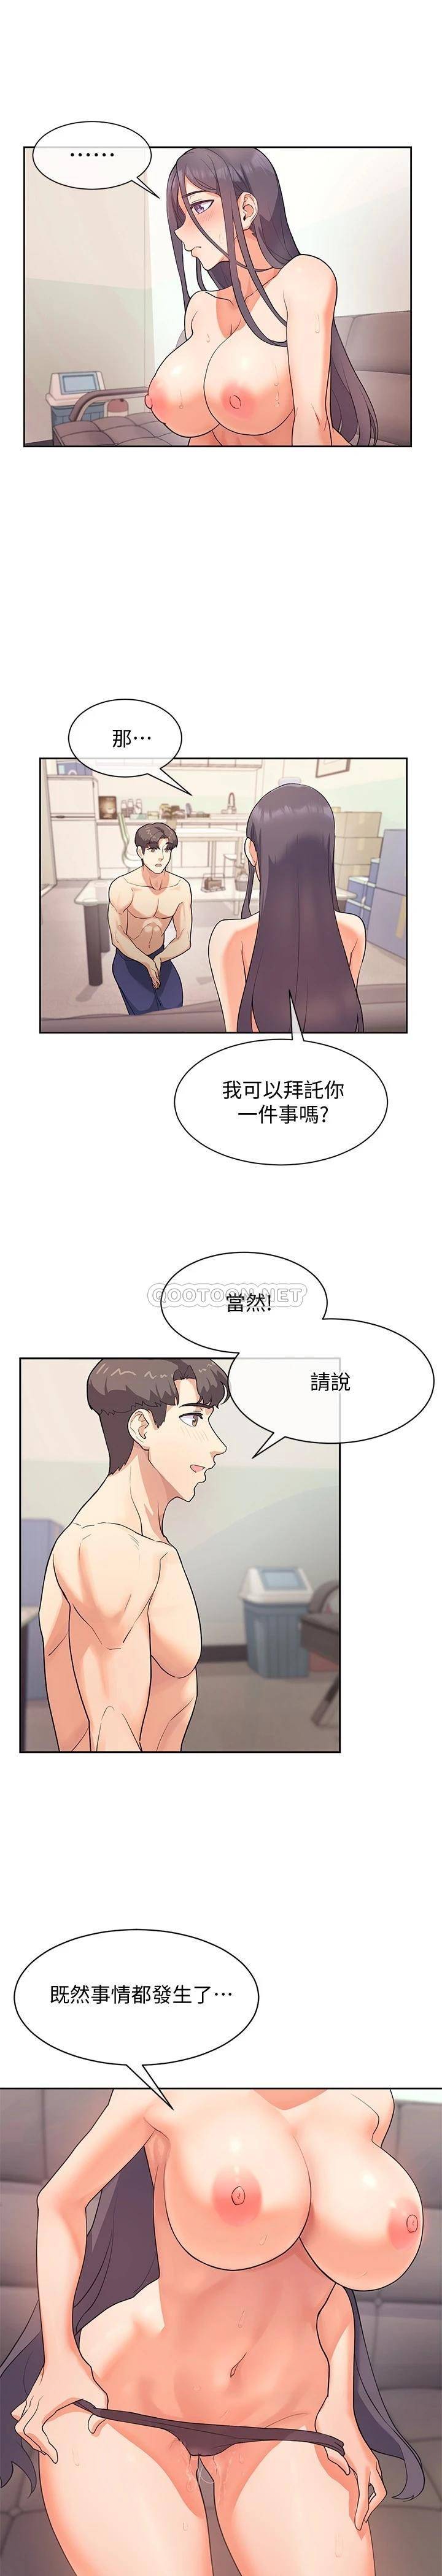 韩国污漫画 現上教學 第5话让男人疯狂的肉感身材 28